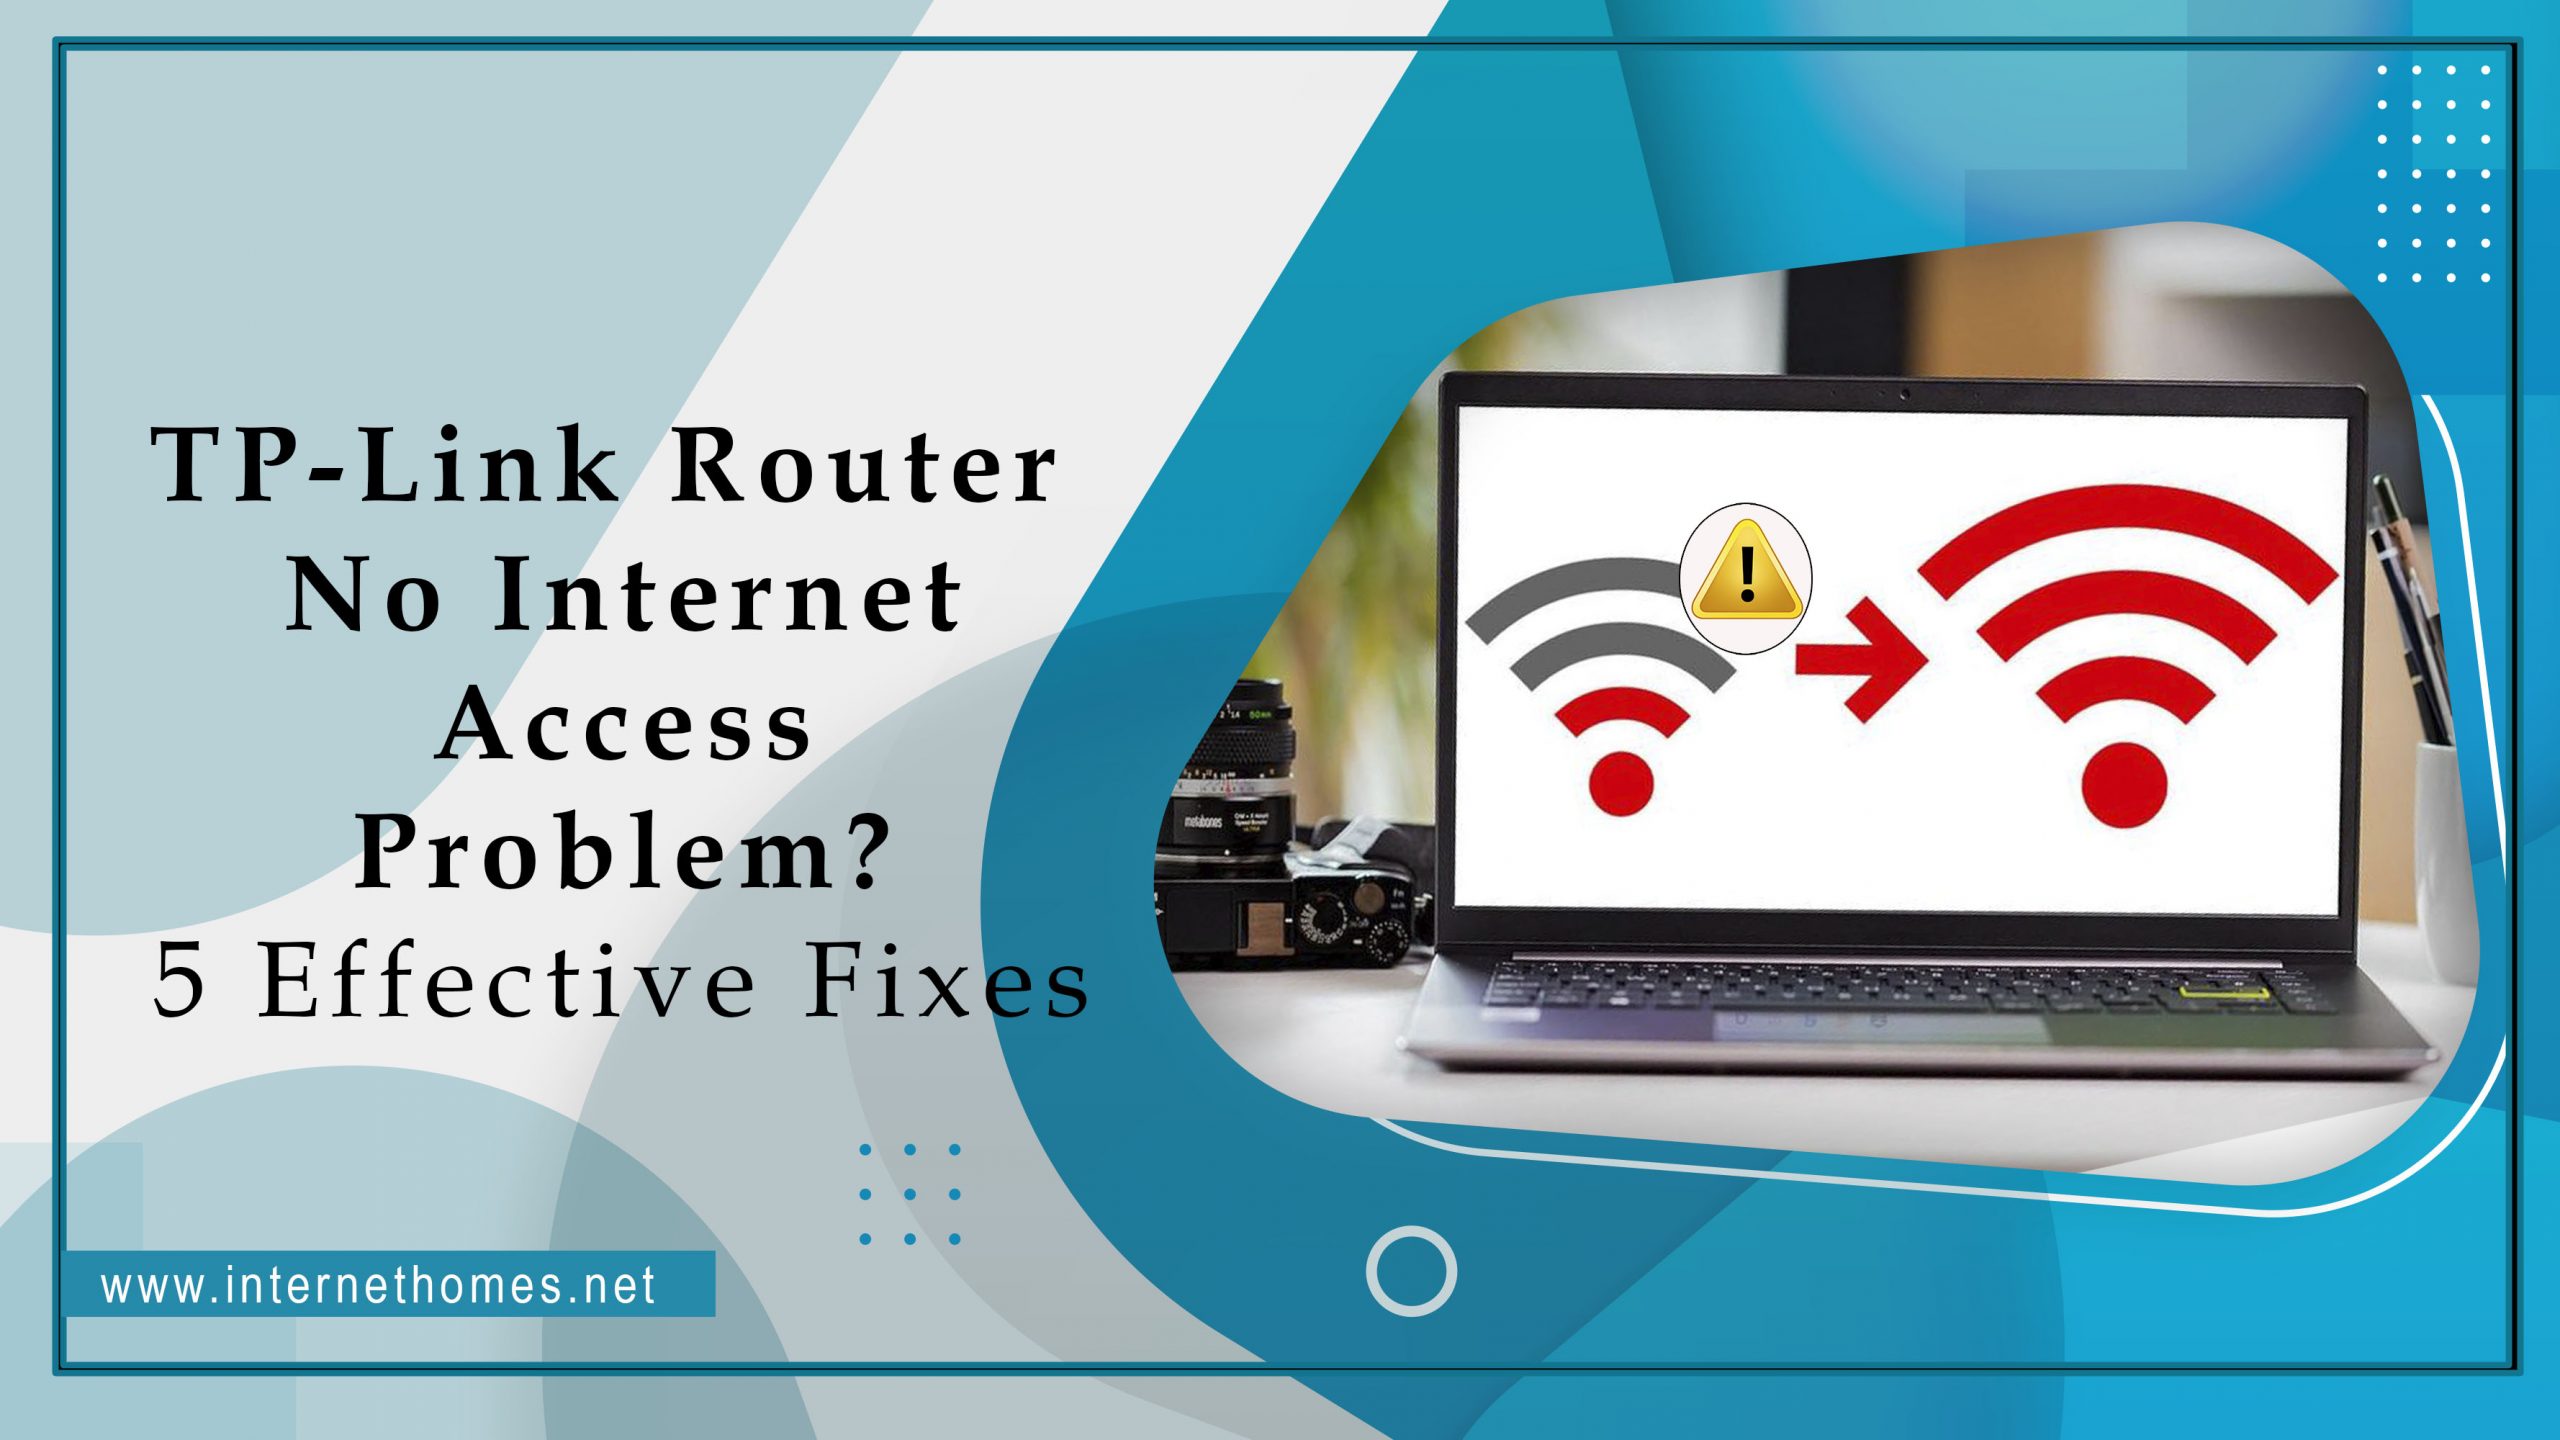 TP-Link Router No Internet Access Problem?